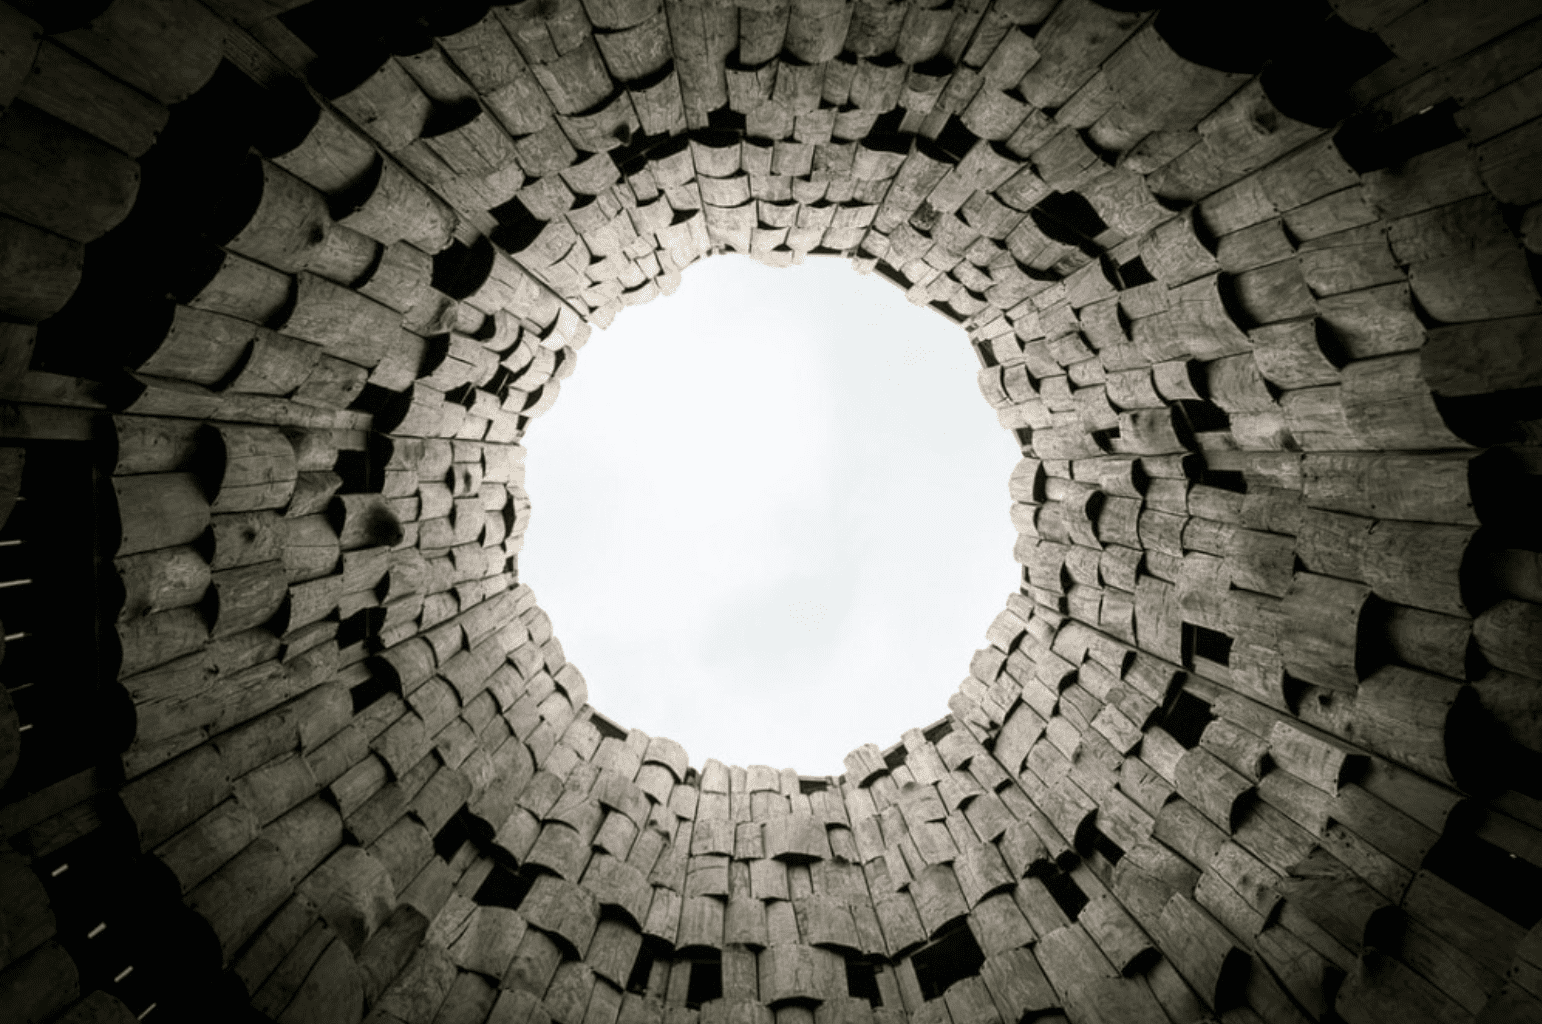 Inside a well